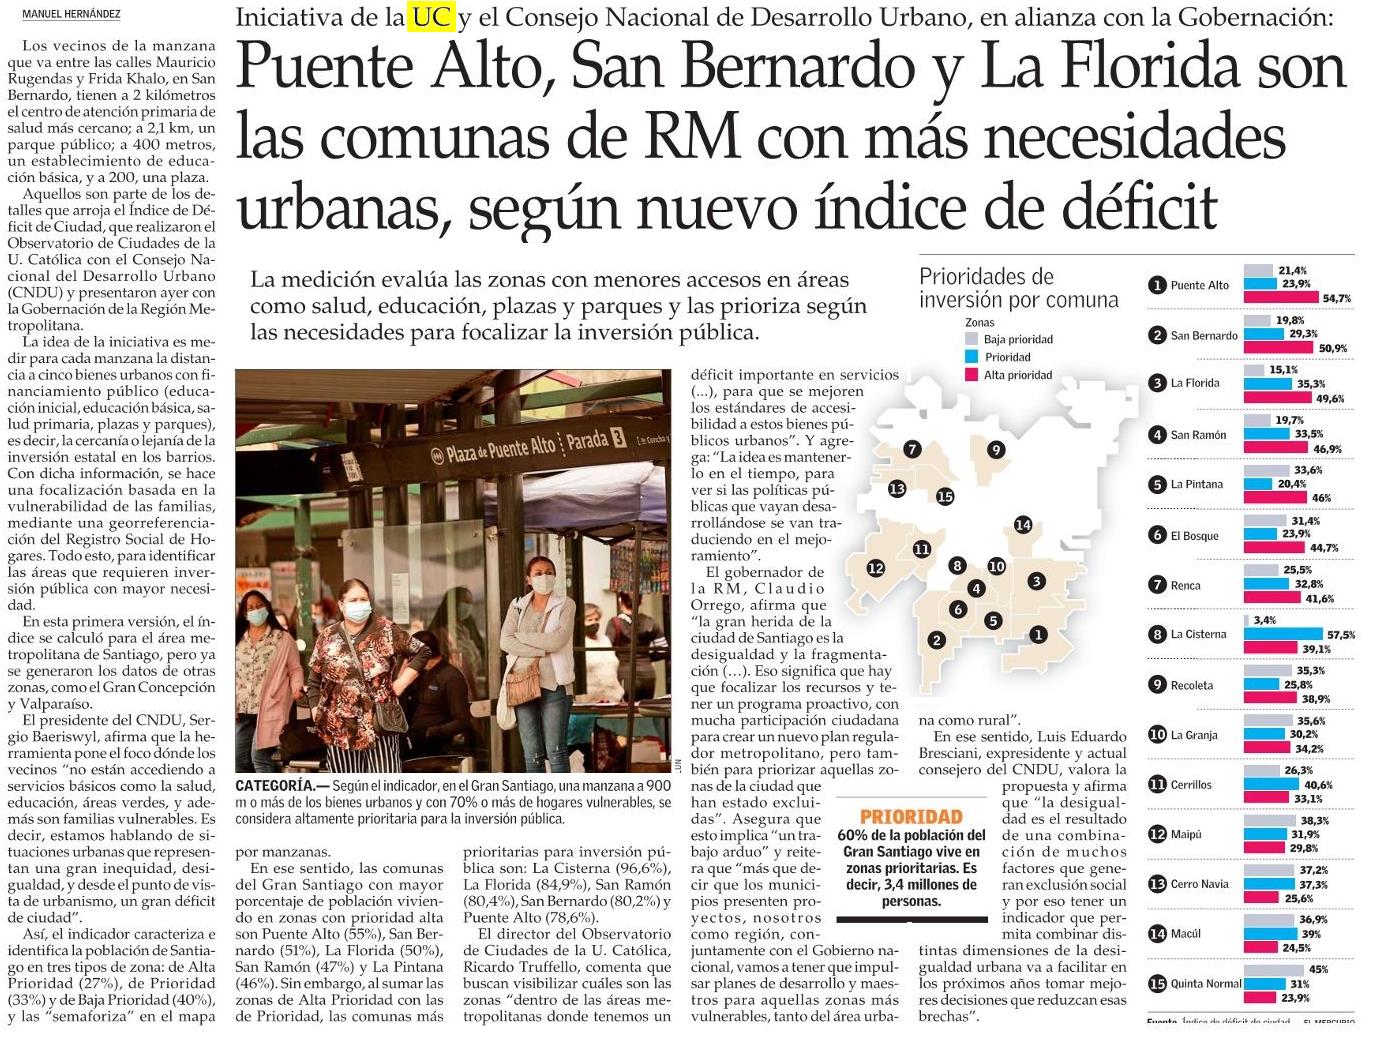 El Mercurio: Puente Alto, San Bernardo y La Florida son las comunas de RM con más necesidades urbanas, según nuevo índice de déficit